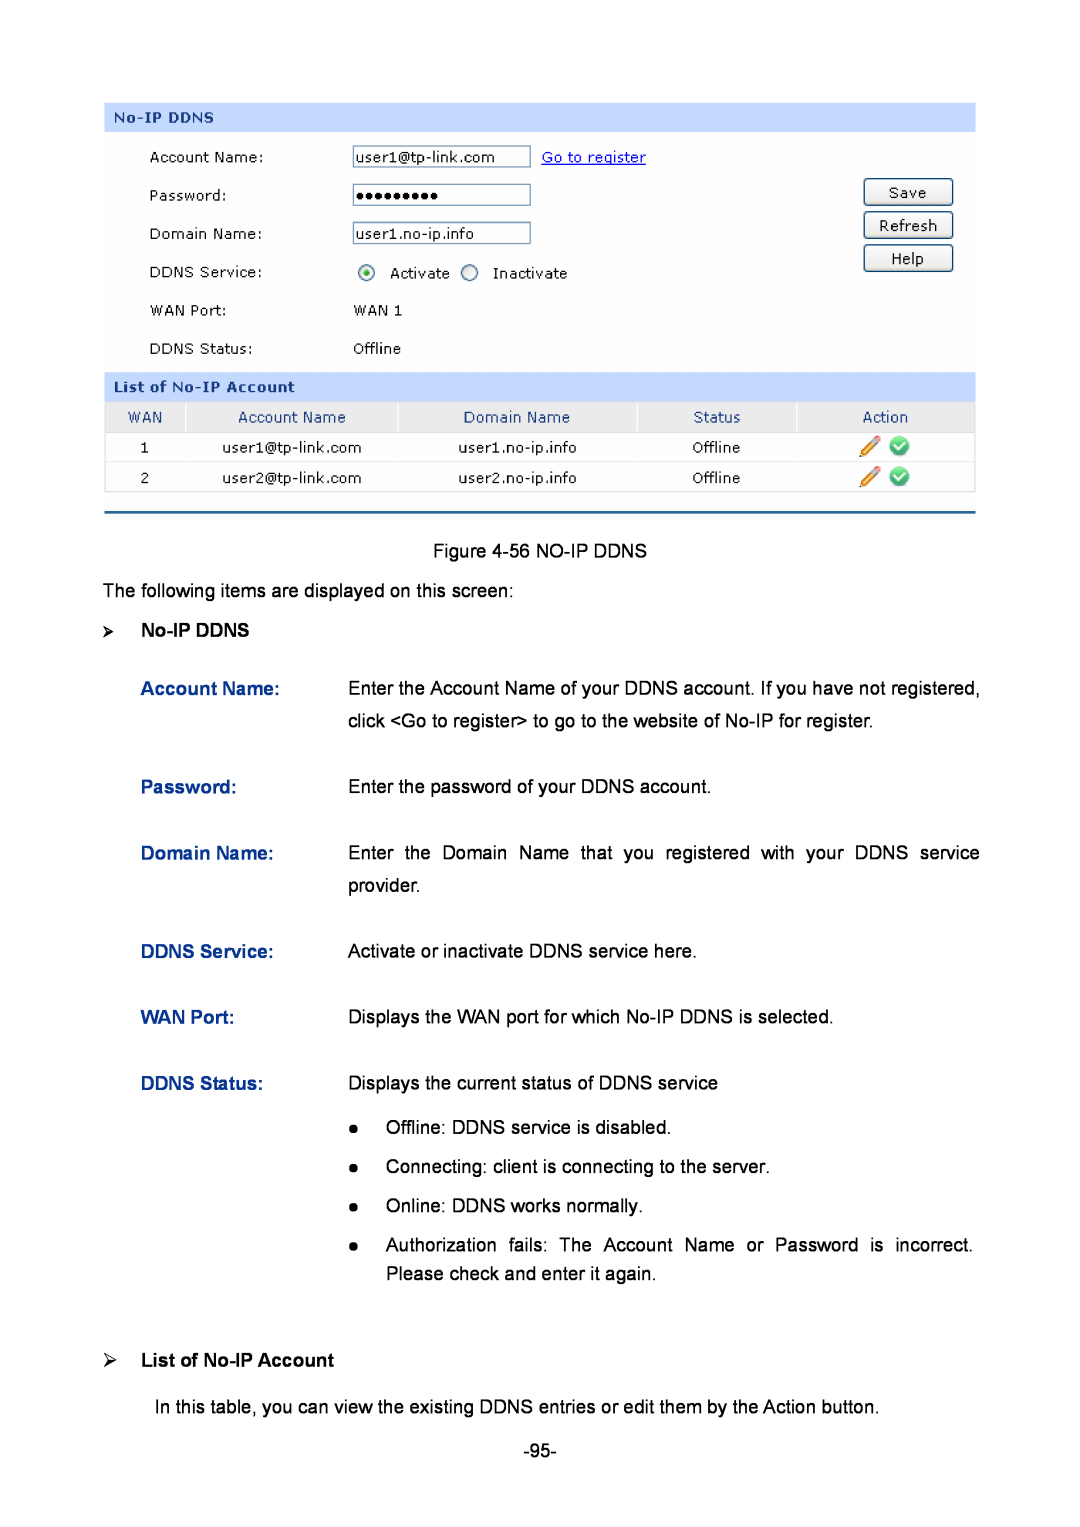 TP-Link 1910010933 manual ¾ No-IP DDNS, ¾ List of No-IP Account 